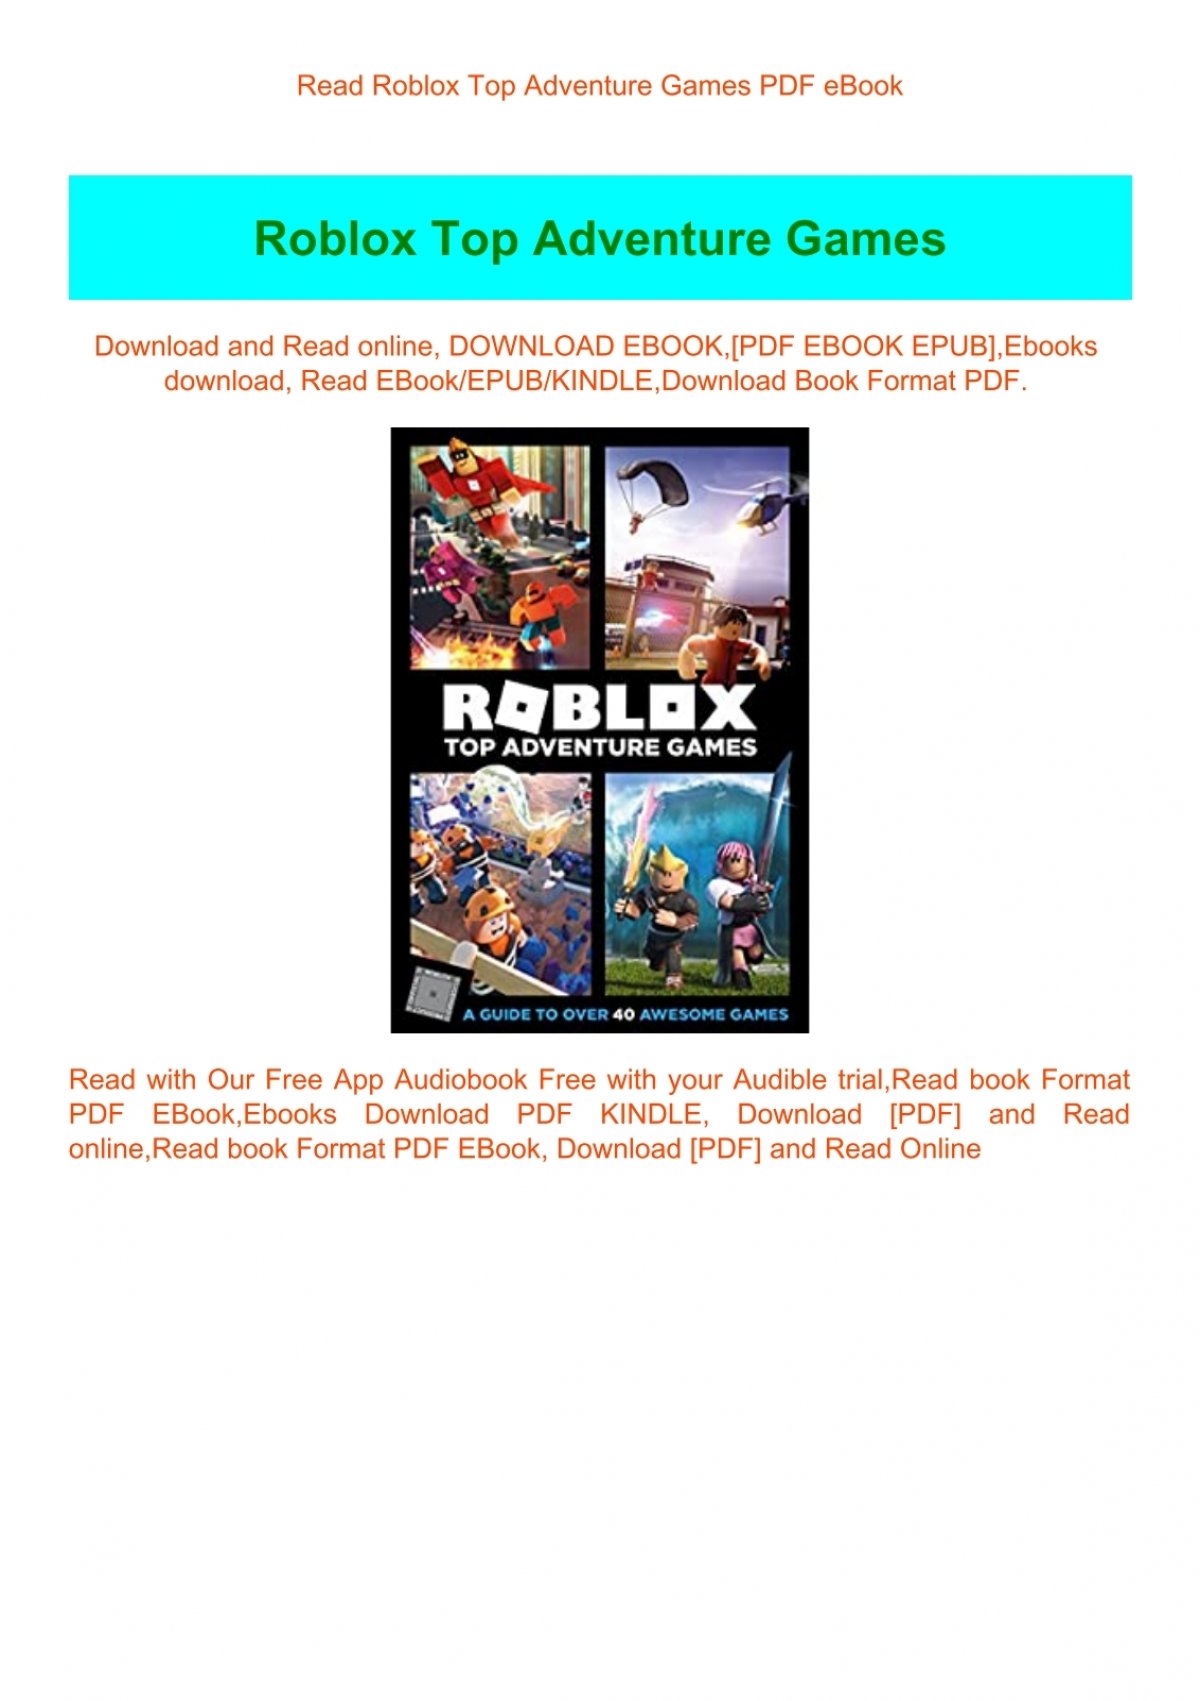 Read Roblox Top Adventure Games Pdf Ebook - book roblox top adventure games official roblox